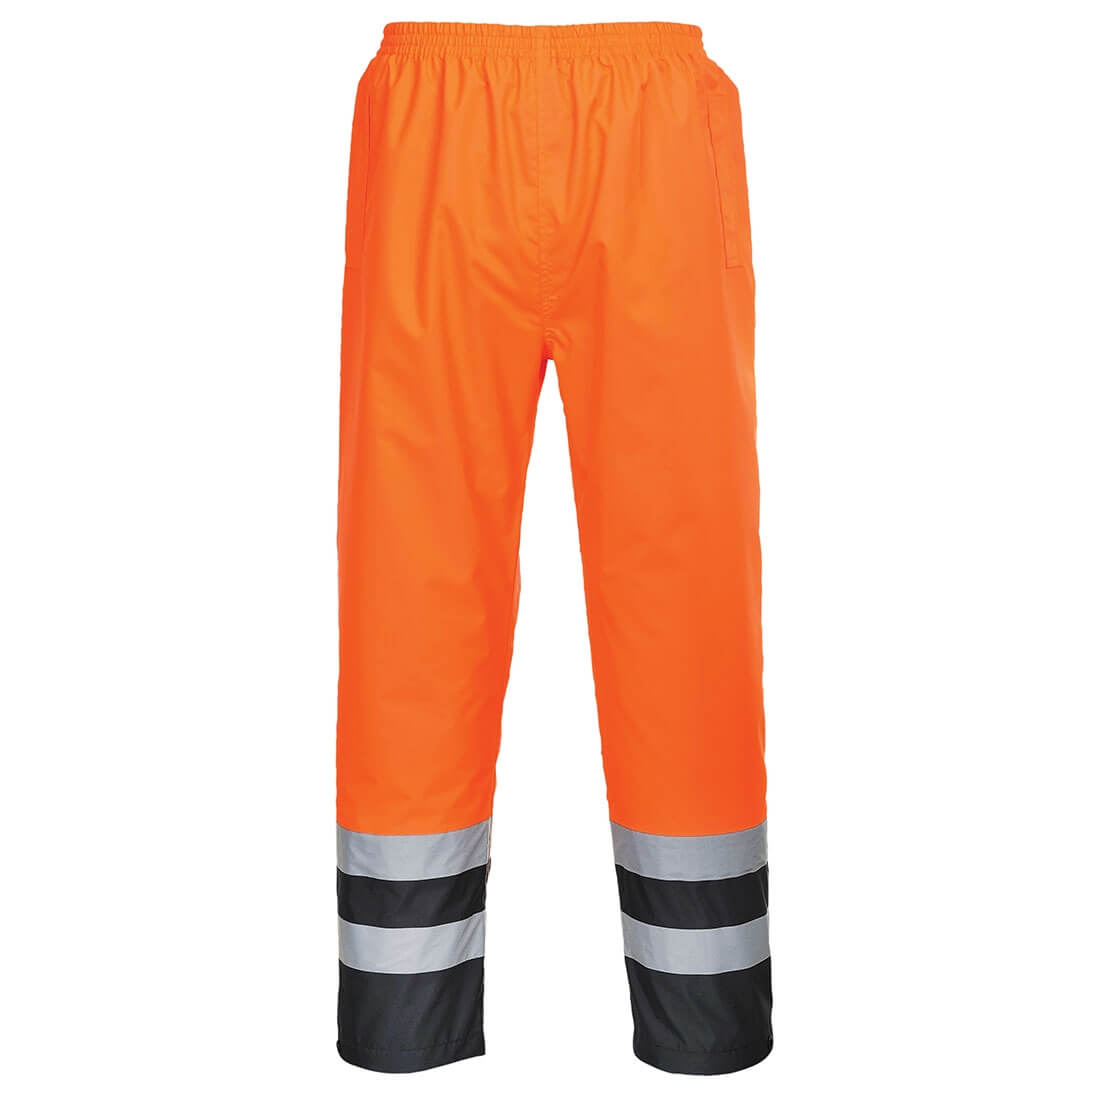 Pantalón bicolor de alta visibilidad para tráfico - Ropa de protección